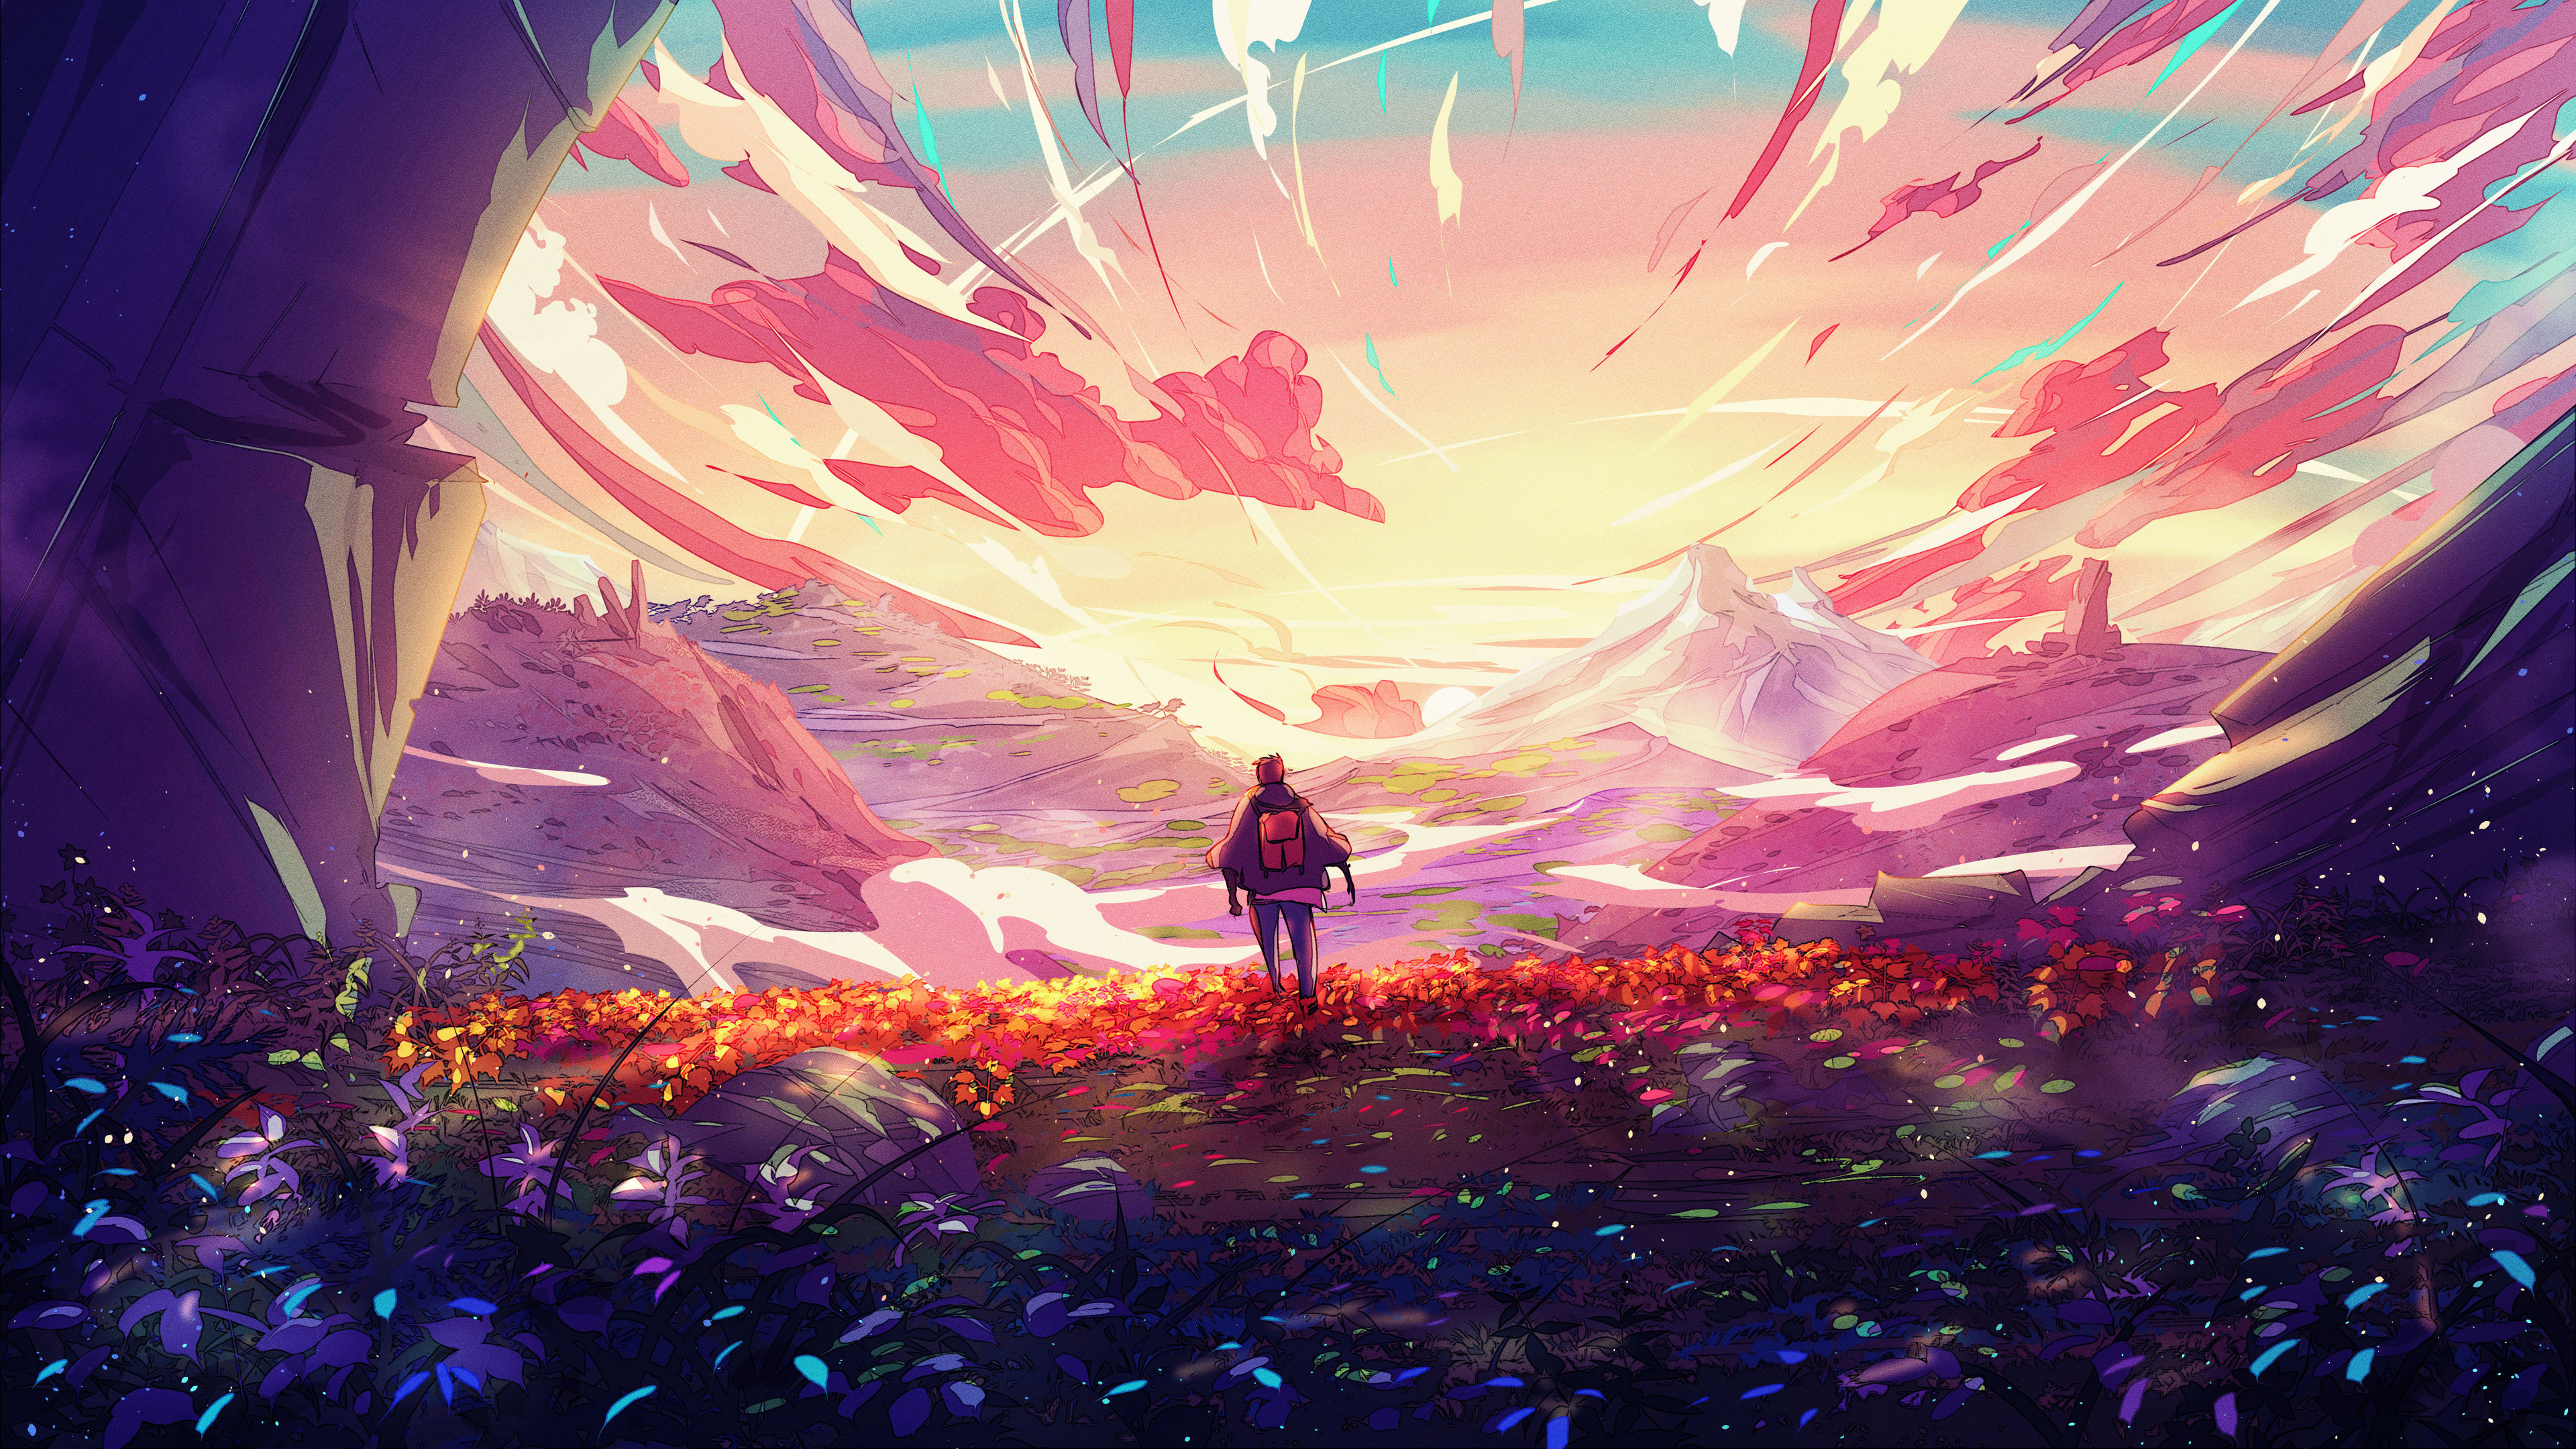 Christian Benavides Digital Art Fantasy Art Traveler Backpacks Clouds Sunrise Flowers Mountains 3840x2160